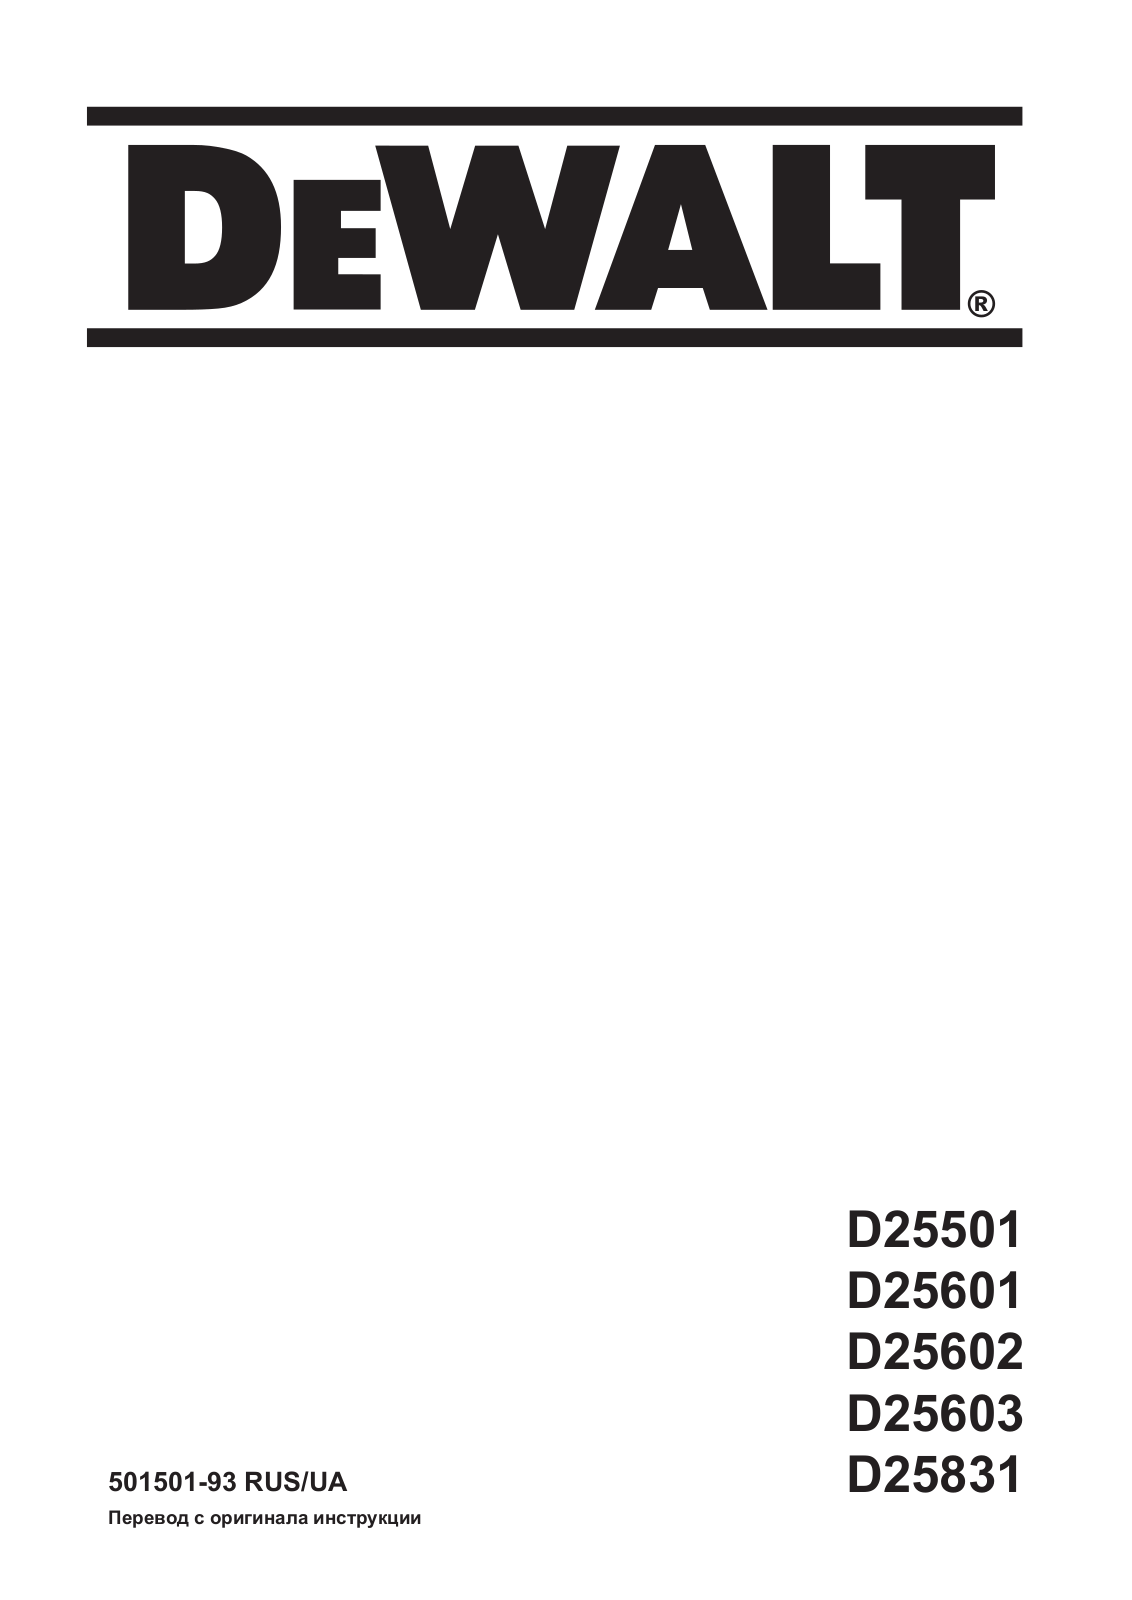 DeWalt D25602K Manual